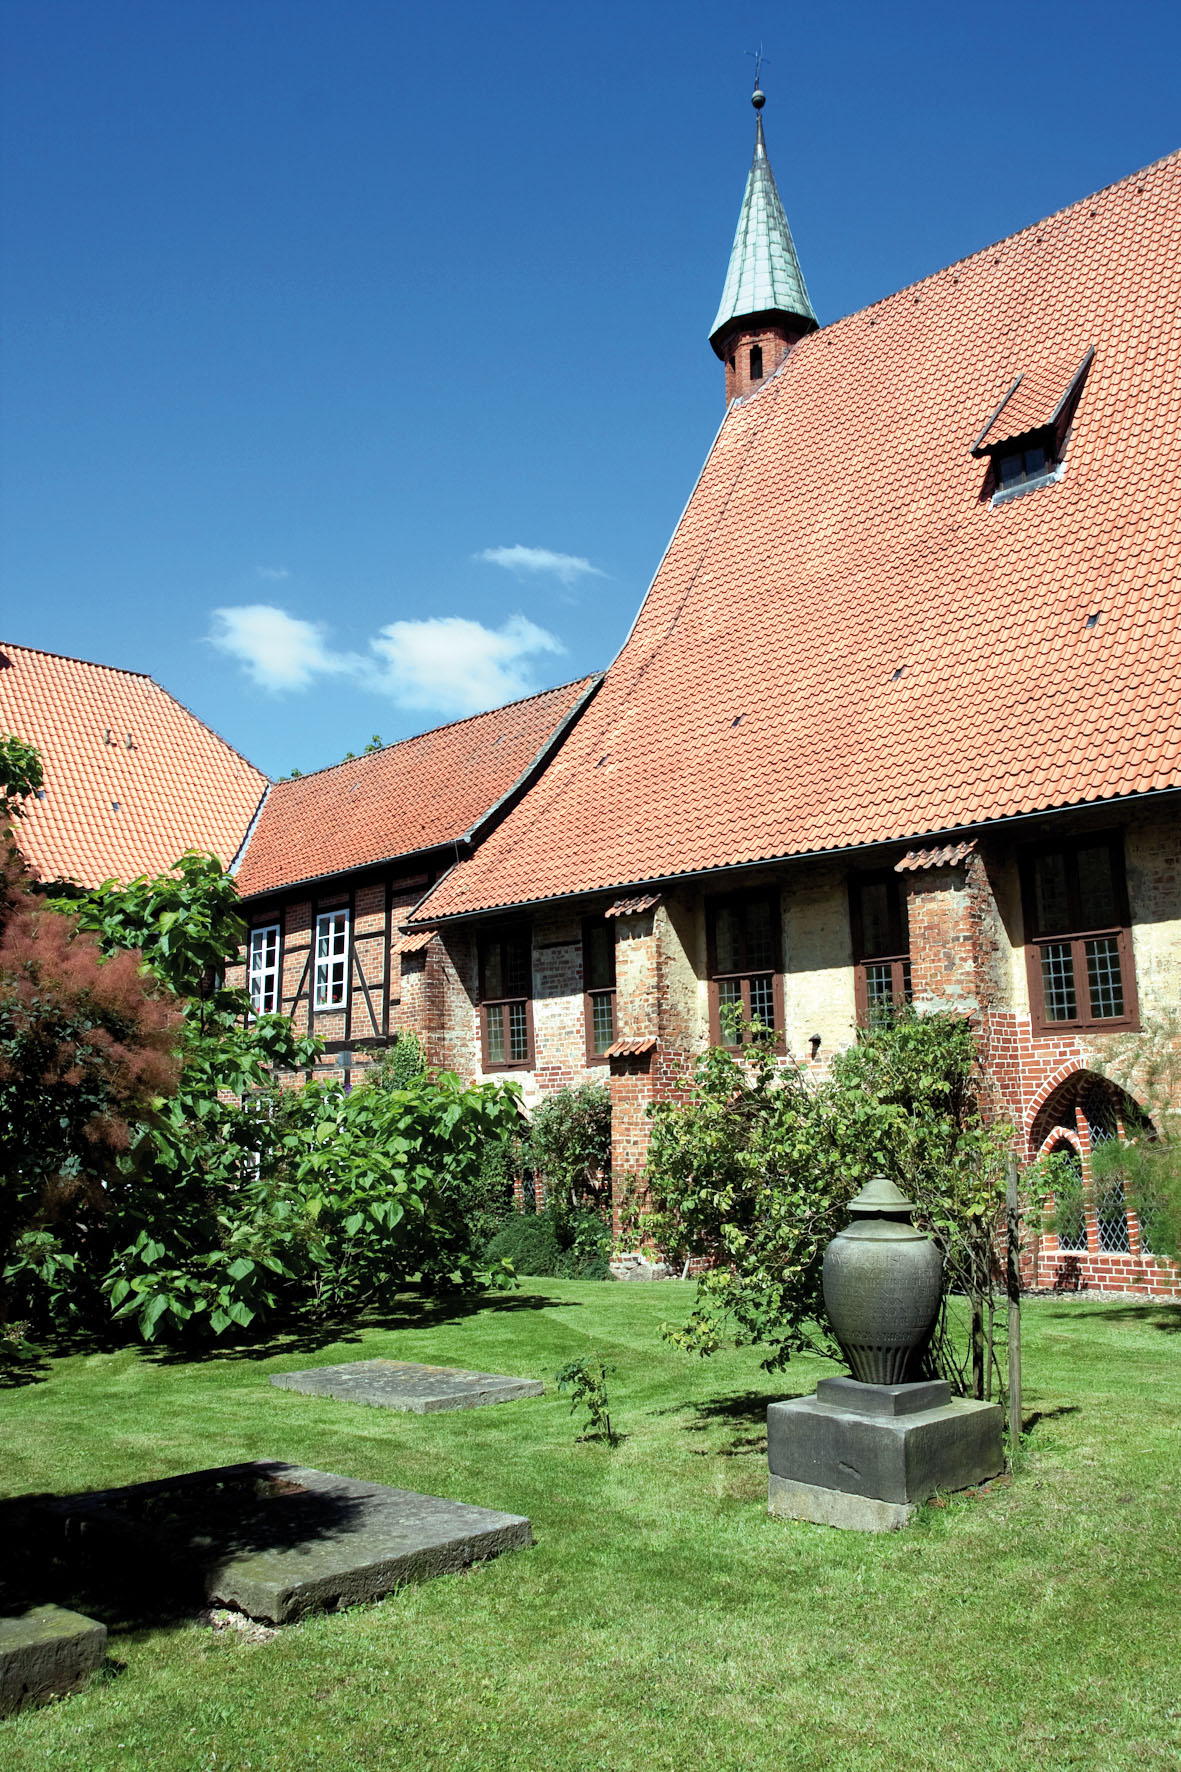 Kloster Isenhagen, Hankensbüttel.
